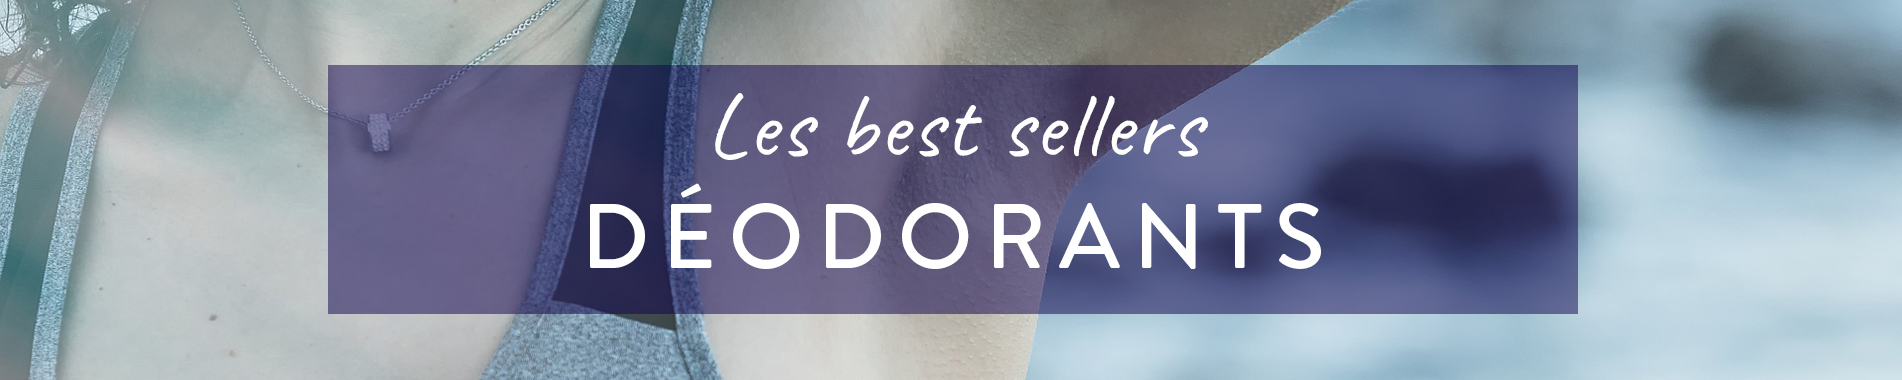 Best sellers : Les meilleures ventes de déodorants et anti-transpirants en parapharmacie